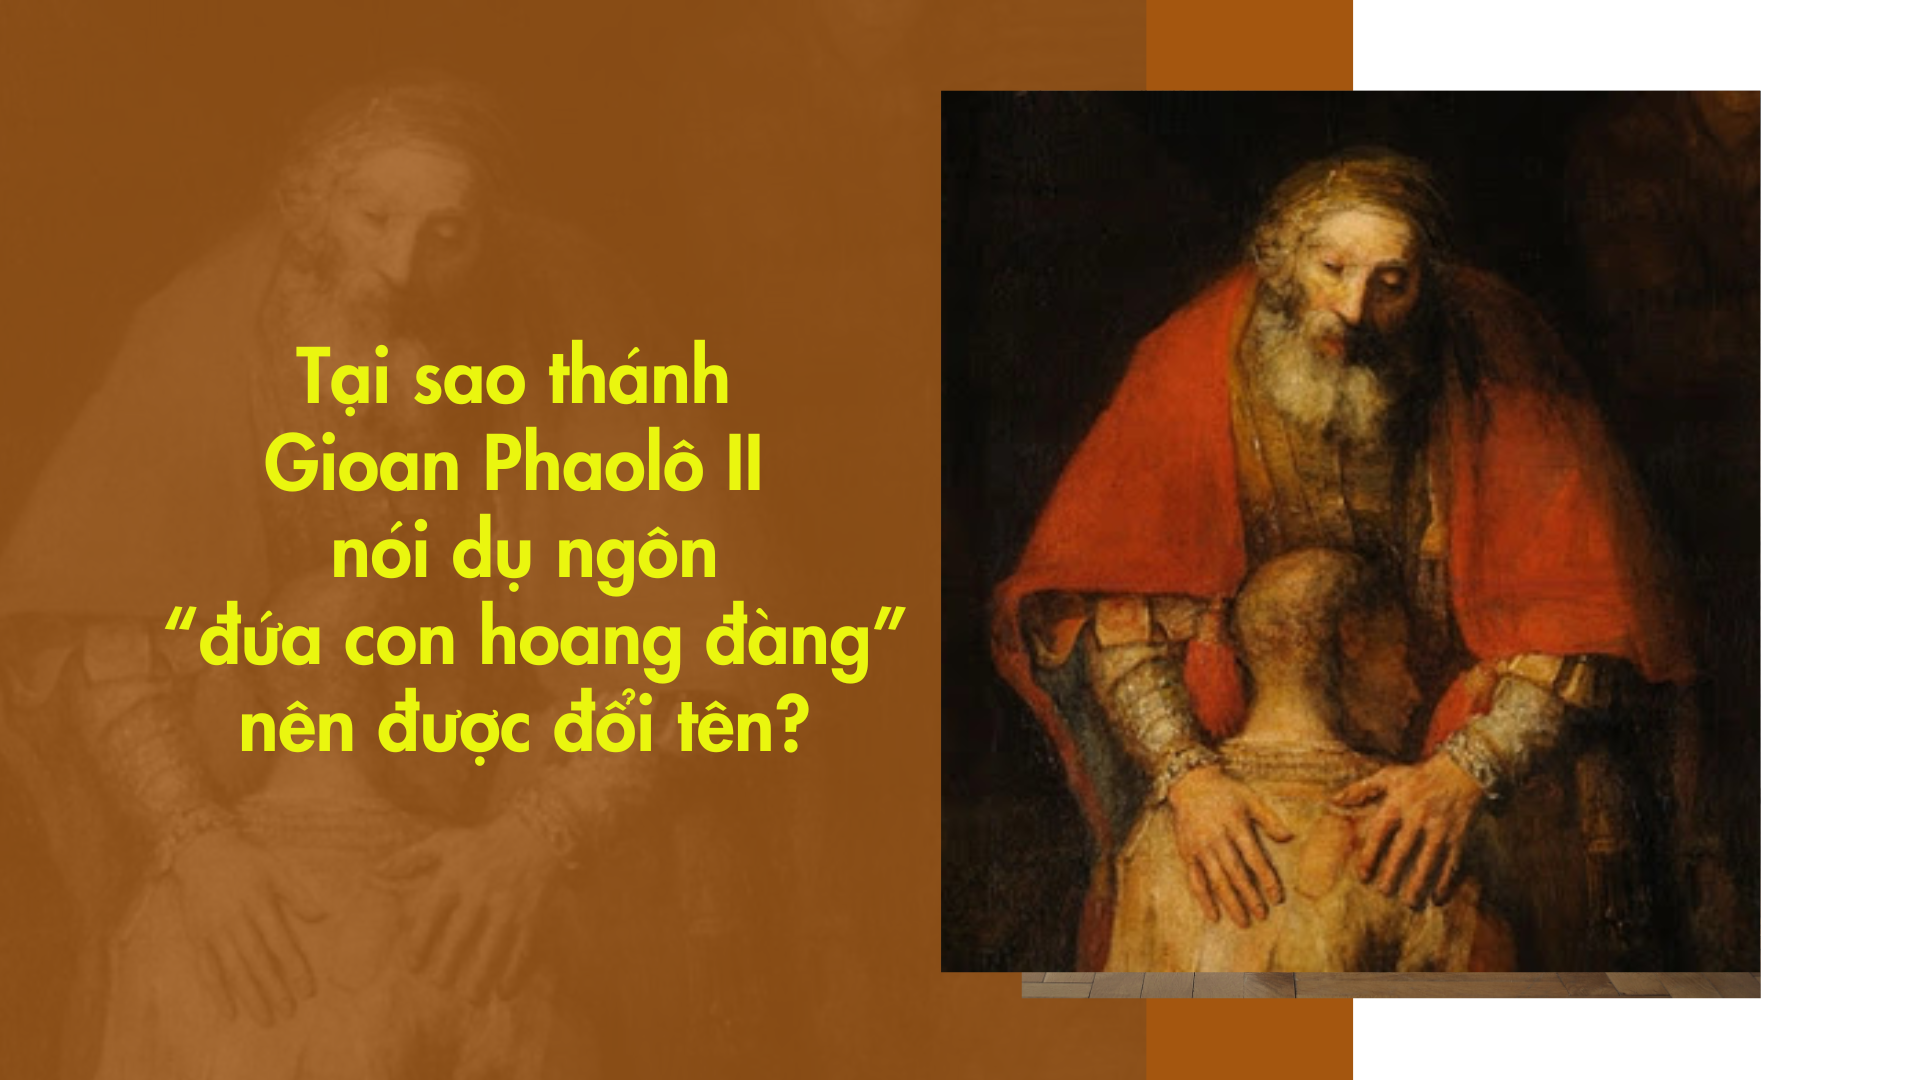 Tại sao thánh Gioan Phaolô II nói dụ ngôn “đứa con hoang đàng” nên được đổi tên